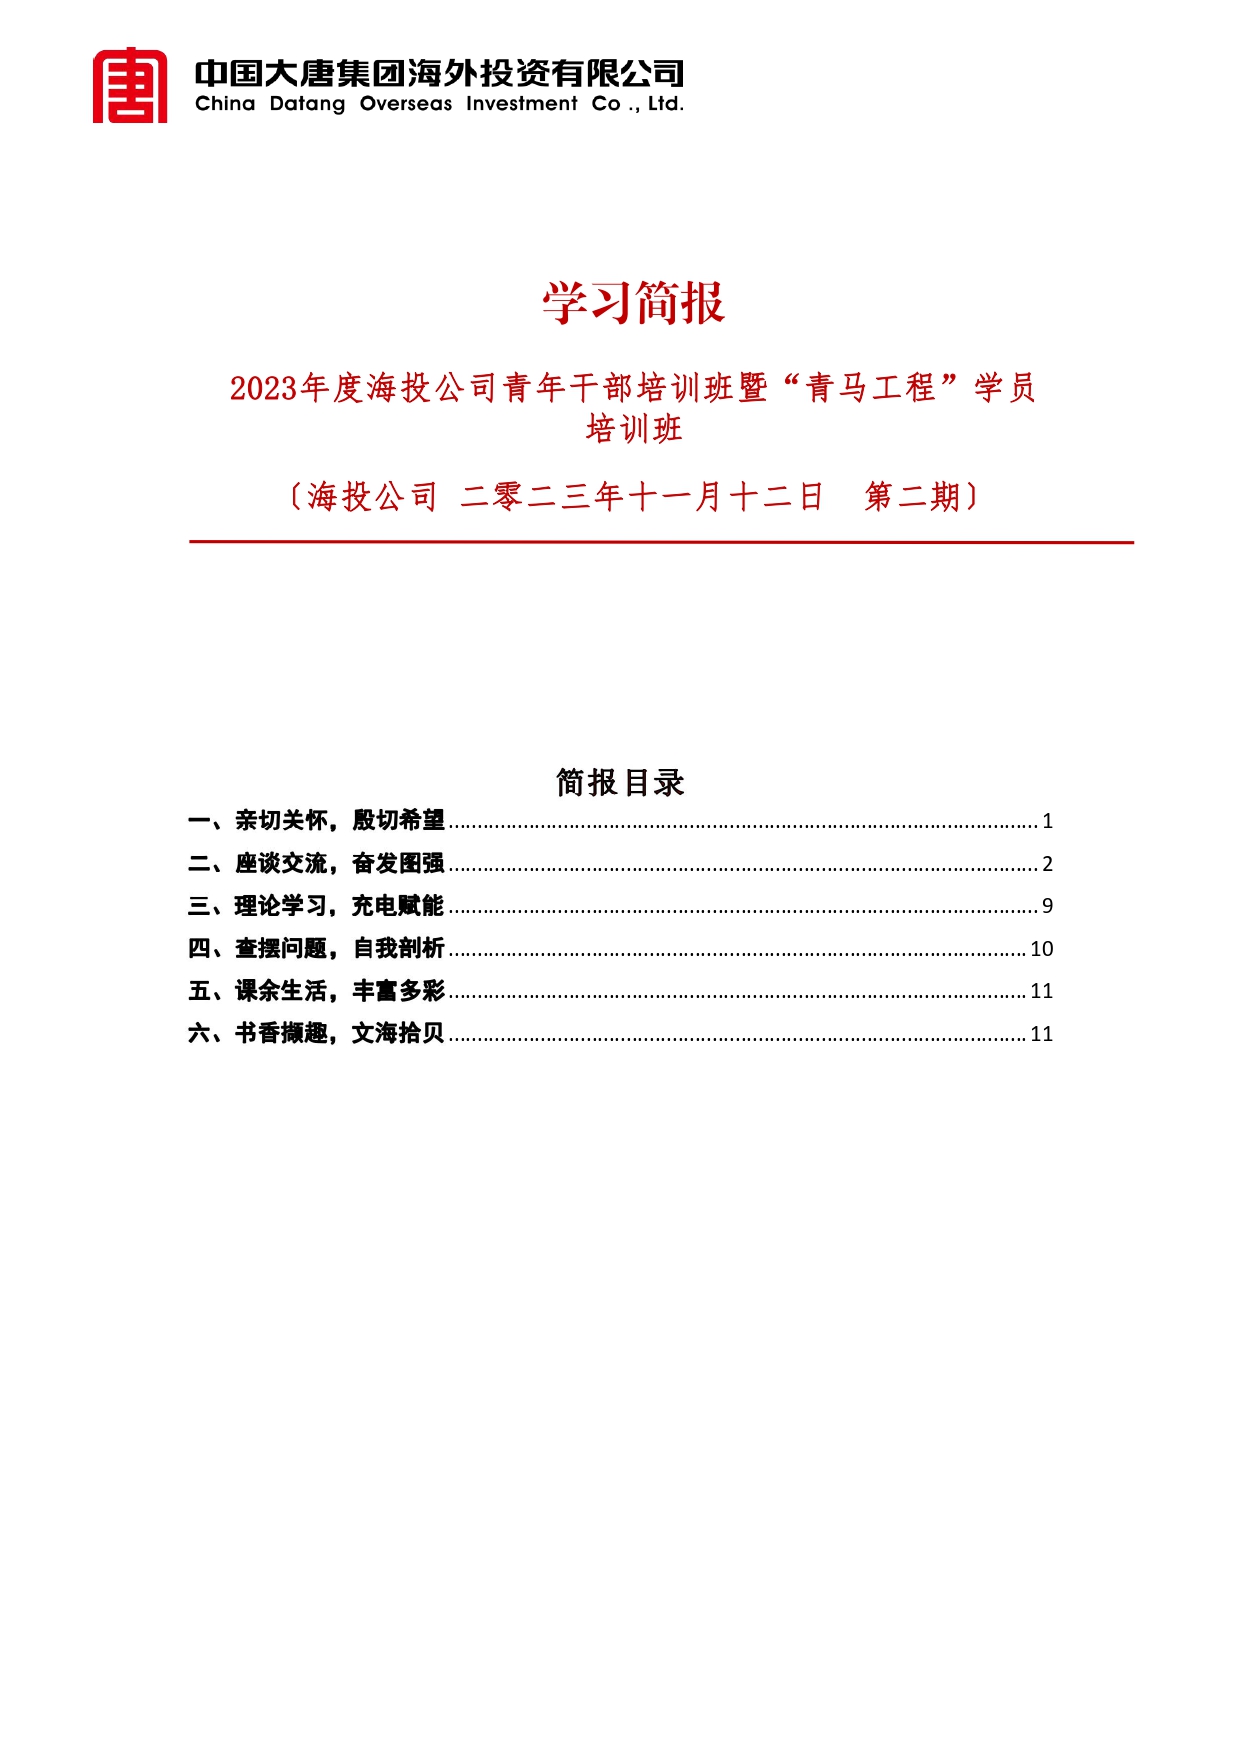 【2023.11.12】2023年度海投青干班学习简报（第二期）_page-0001.jpg